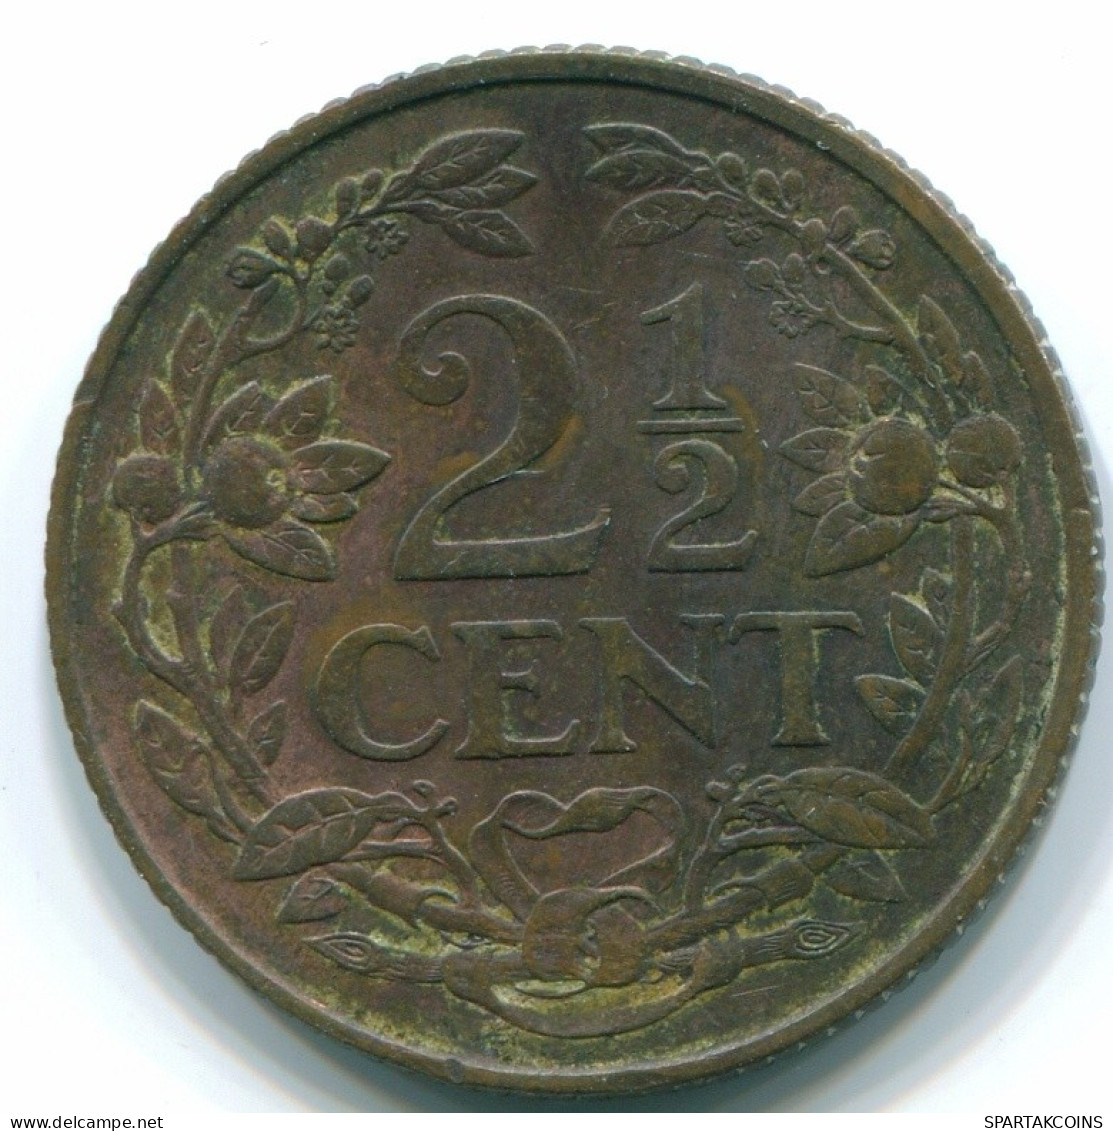 2 1/2 CENT 1959 CURACAO NIEDERLANDE NETHERLANDS Koloniale Münze #S10160.D.A - Curaçao